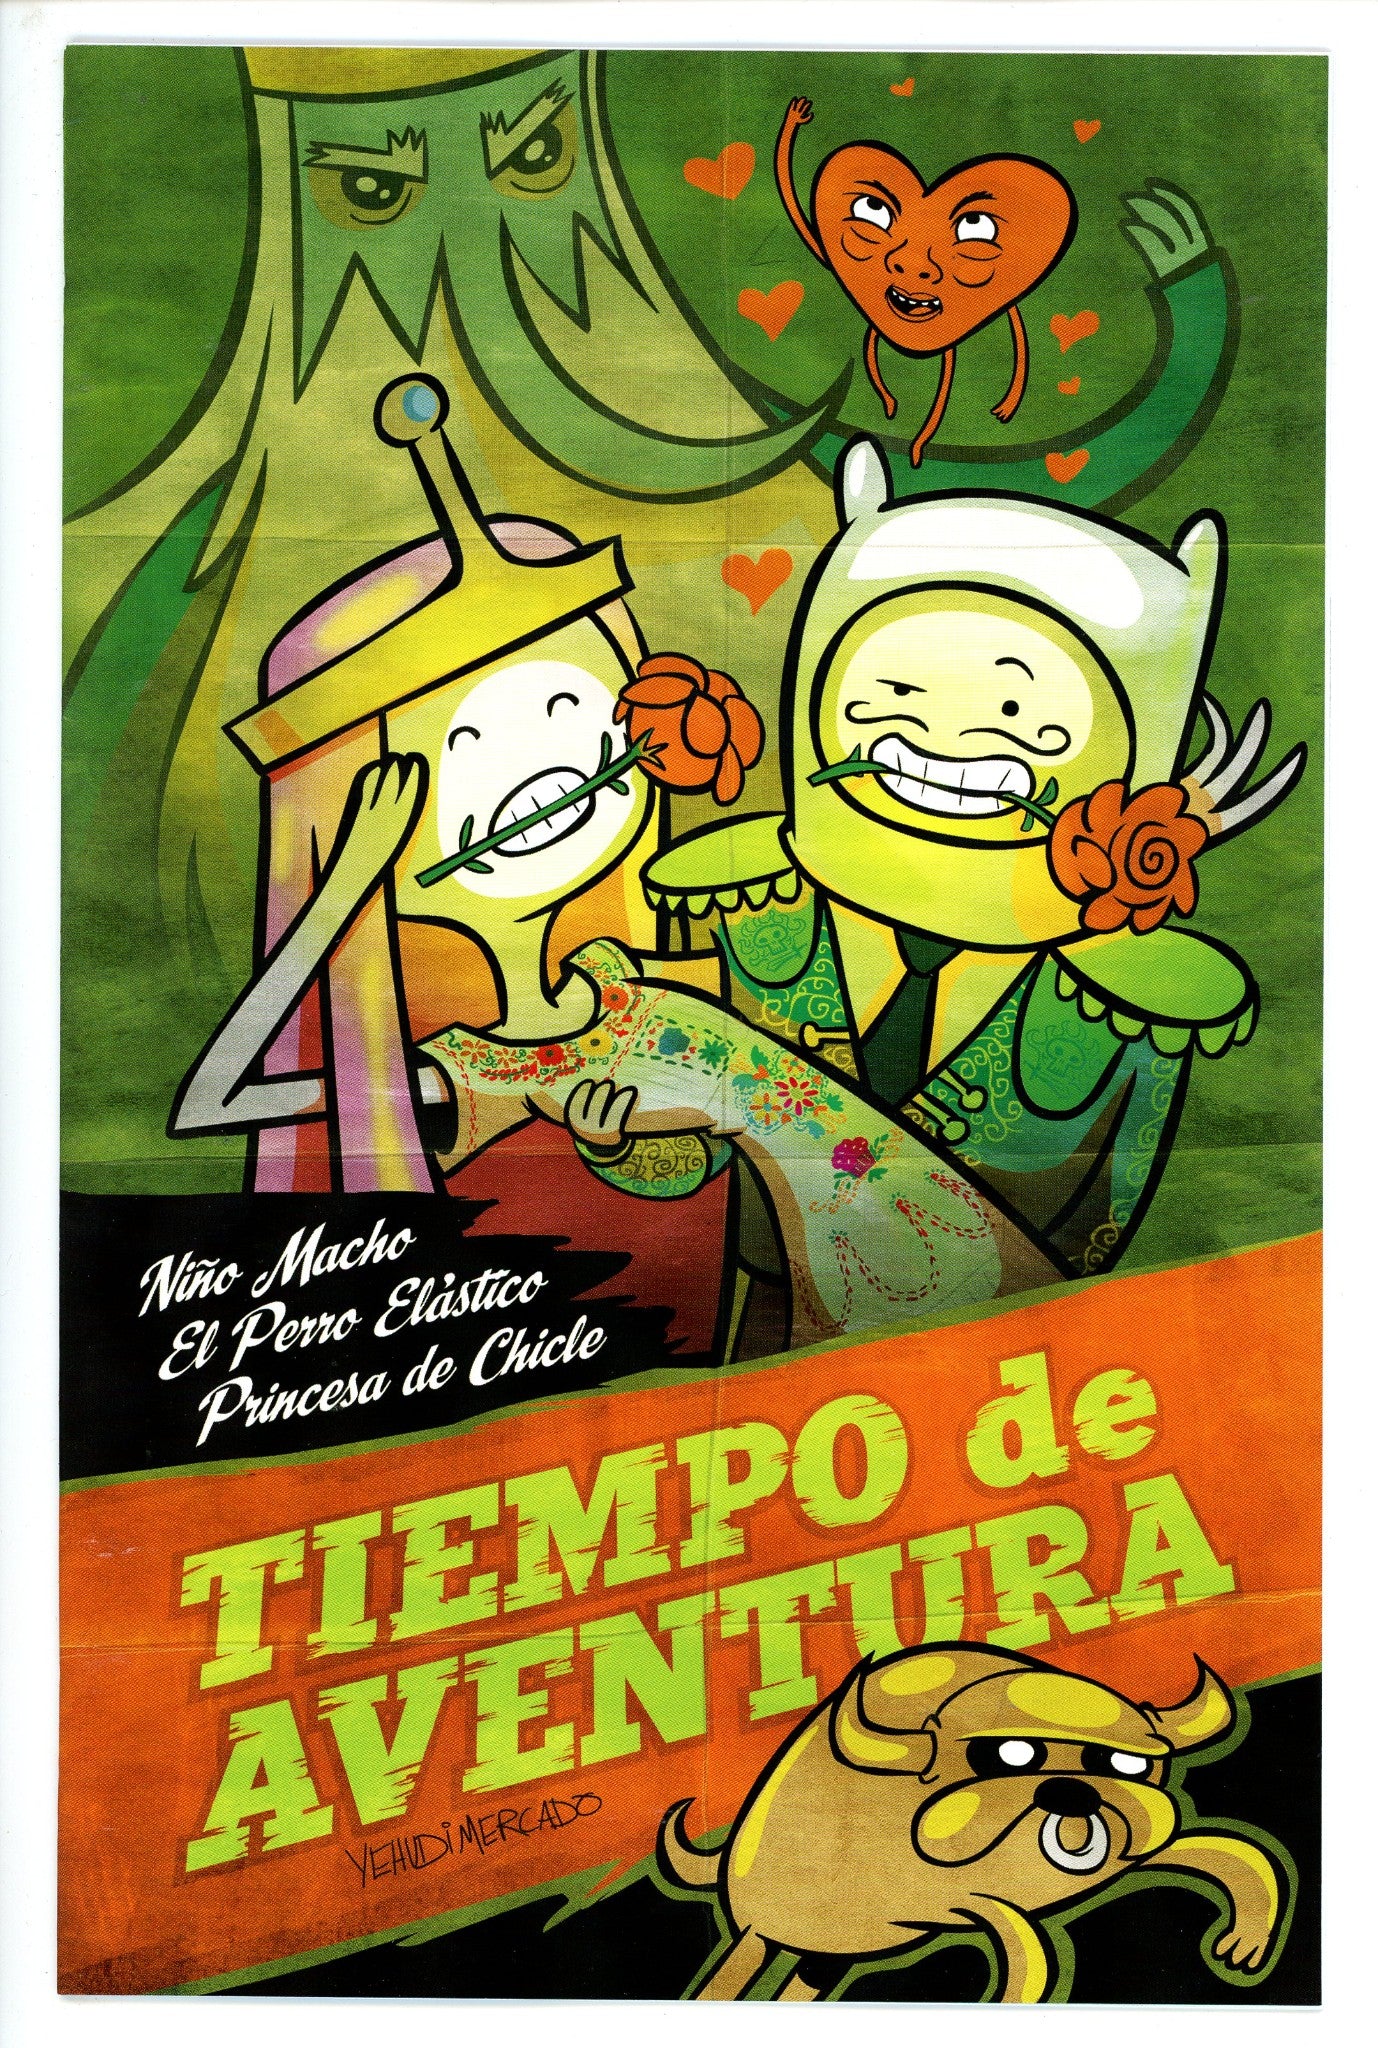 Adventure Time Vol 1 18 Mercado Variant-Boom-CaptCan Comics Inc